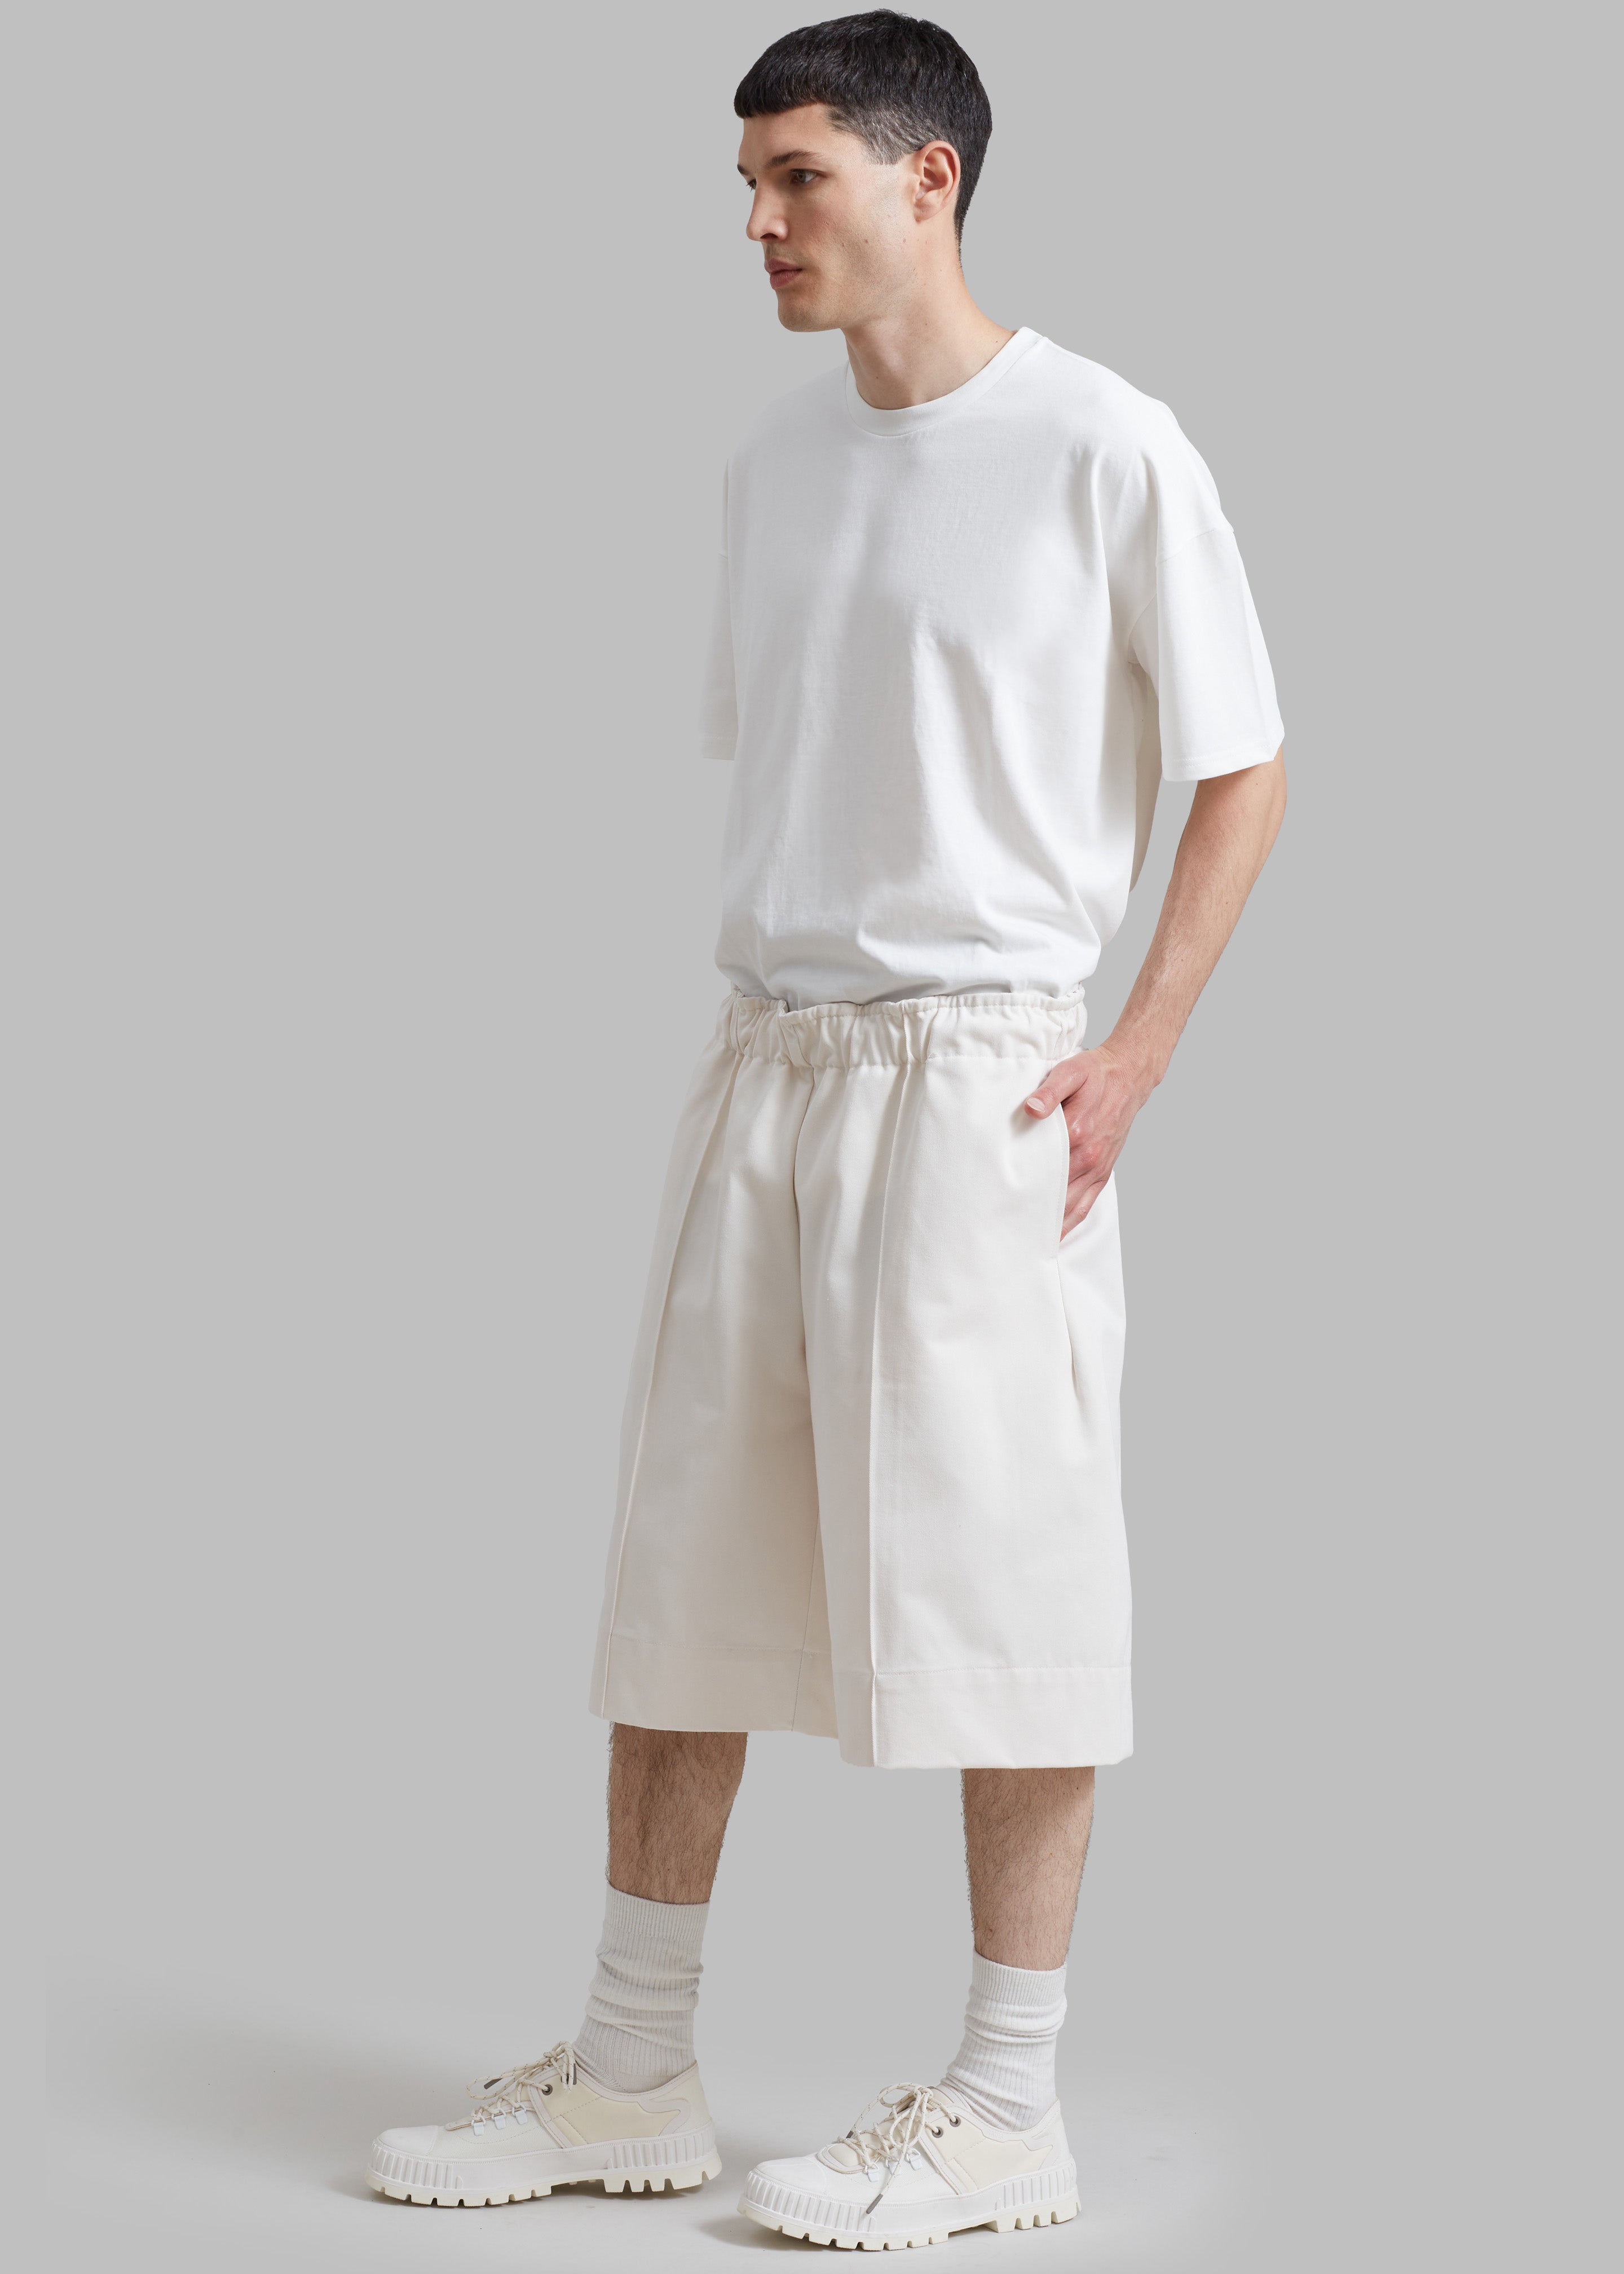 Adan Bermuda Shorts - Cream - 6